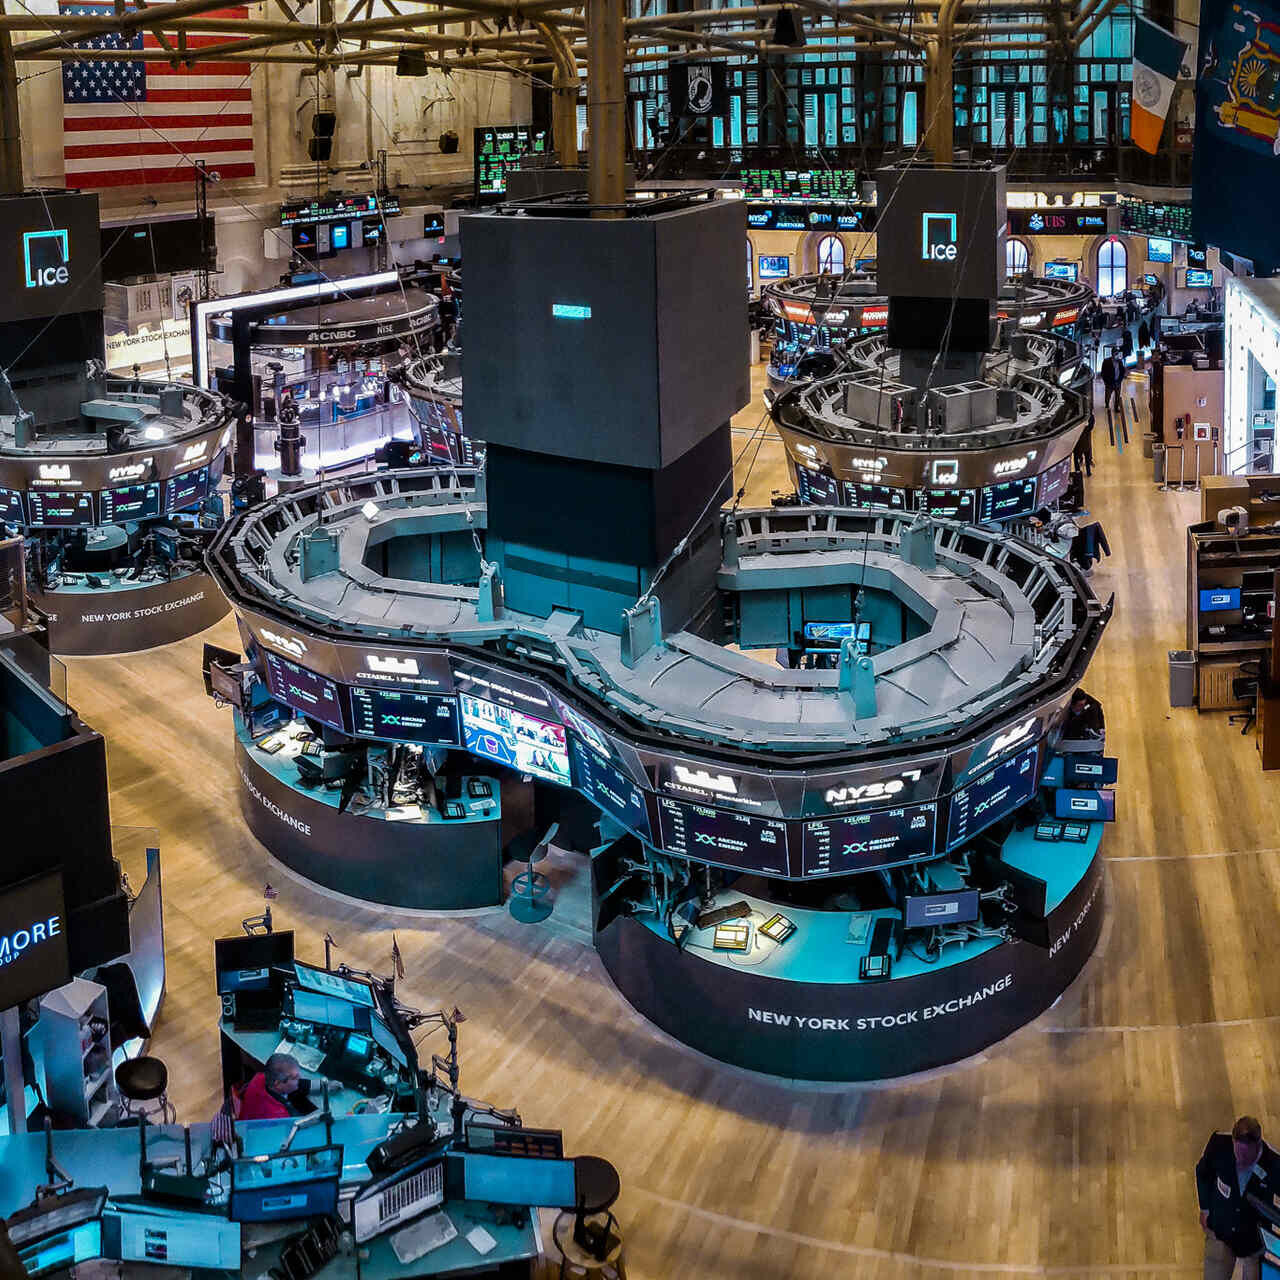 ETF: məşhur Wall Street-ə əsaslanan və 1817-ci ildə əsası qoyulmuş Nyu-York Fond Birjasının ticarət mərtəbəsi (New York Fond Birjası və ya NYSE qısaltması).